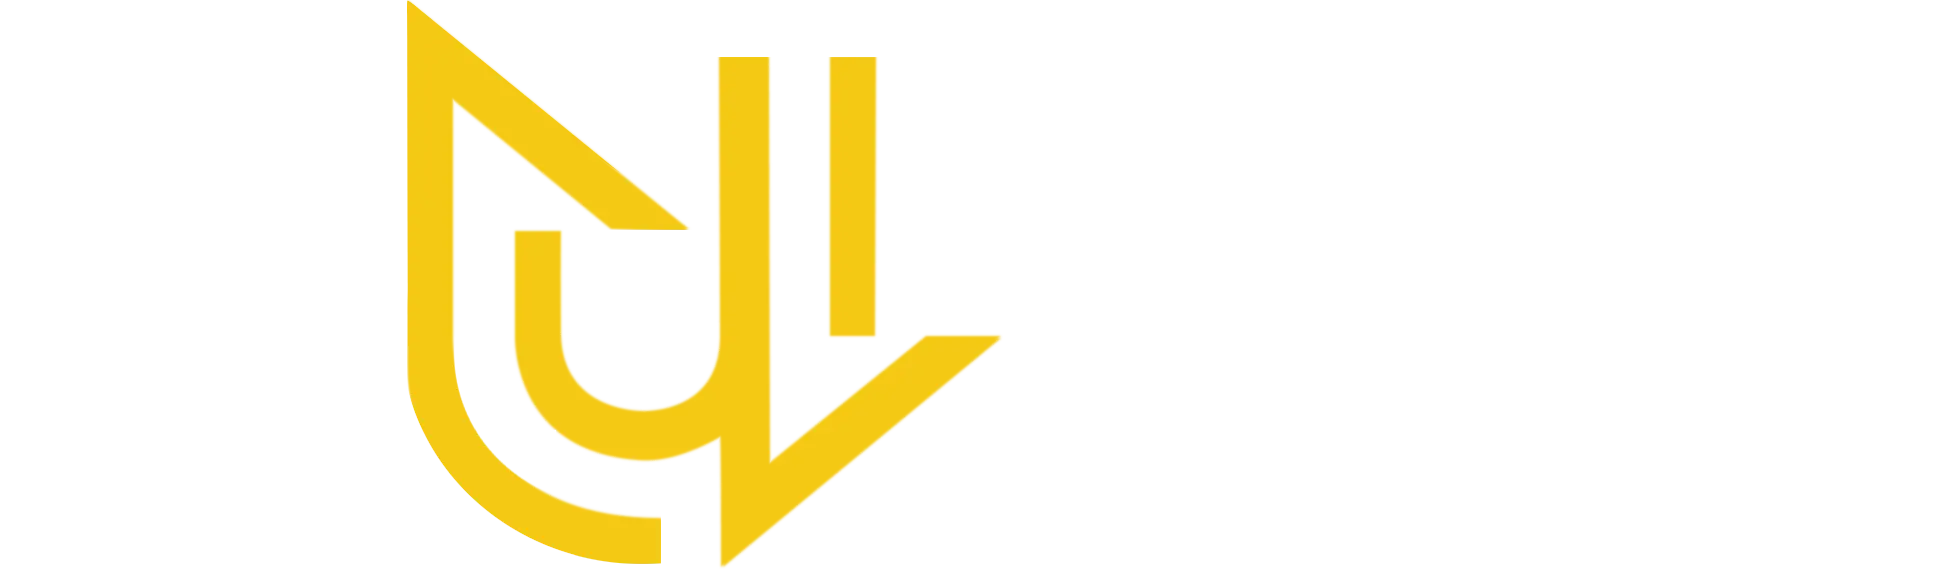 Huber Logo